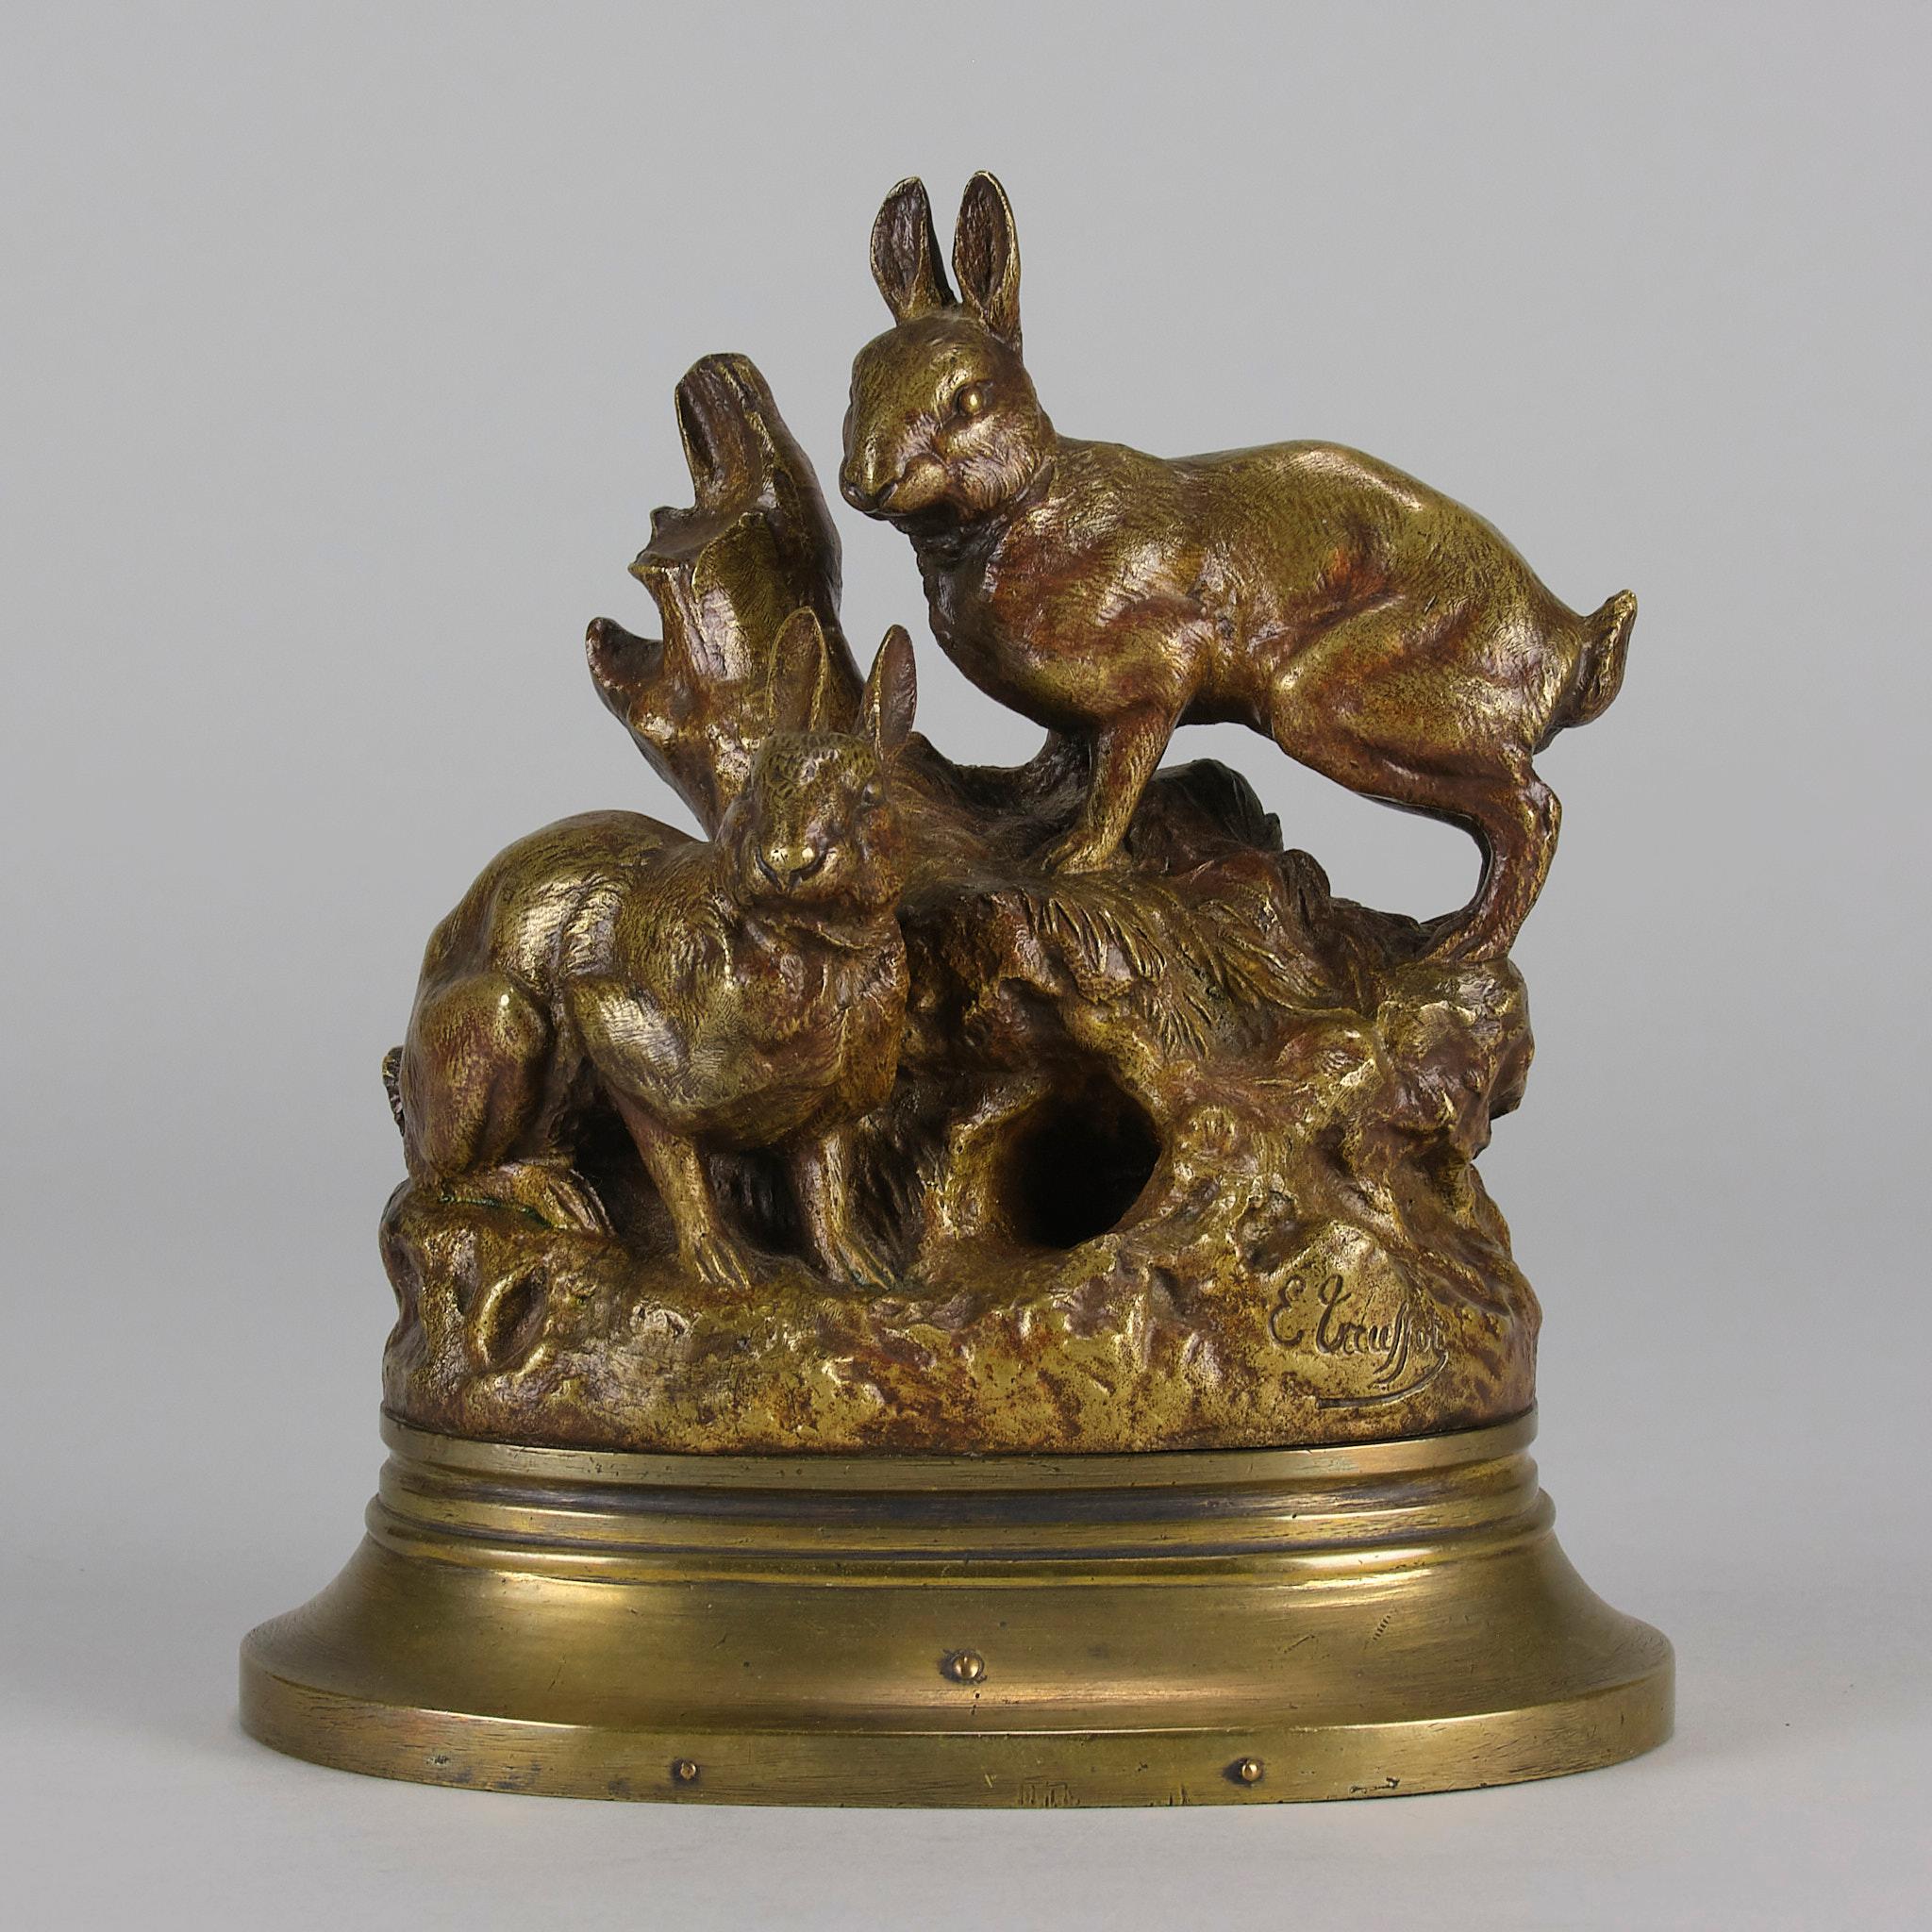 Charmante französische vergoldete Bronzestudie aus der Mitte des 19. Jahrhunderts, die zwei Kaninchen zeigt, die in aufmerksamer Haltung außerhalb ihres Baues stehen. Die Bronze weist hervorragende handziselierte Oberflächendetails und eine schöne